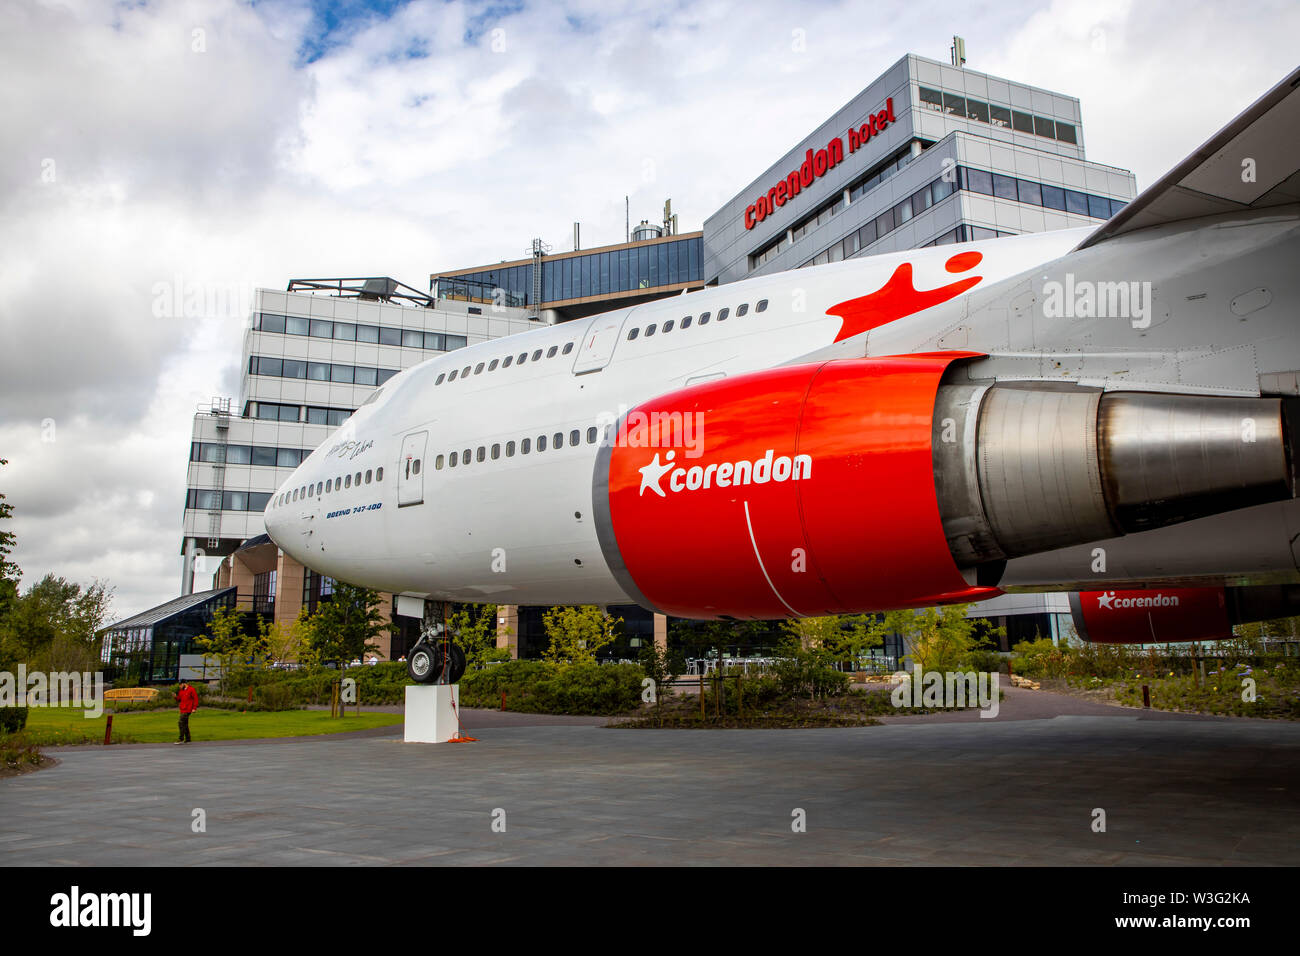 Corendon Hotels Village, à l'aéroport d'Amsterdam-Schiphol, ex-KLM Boeing 747-400, Jumbo jet, dans le parc de l'hôtel complexe, seront convertis en Banque D'Images